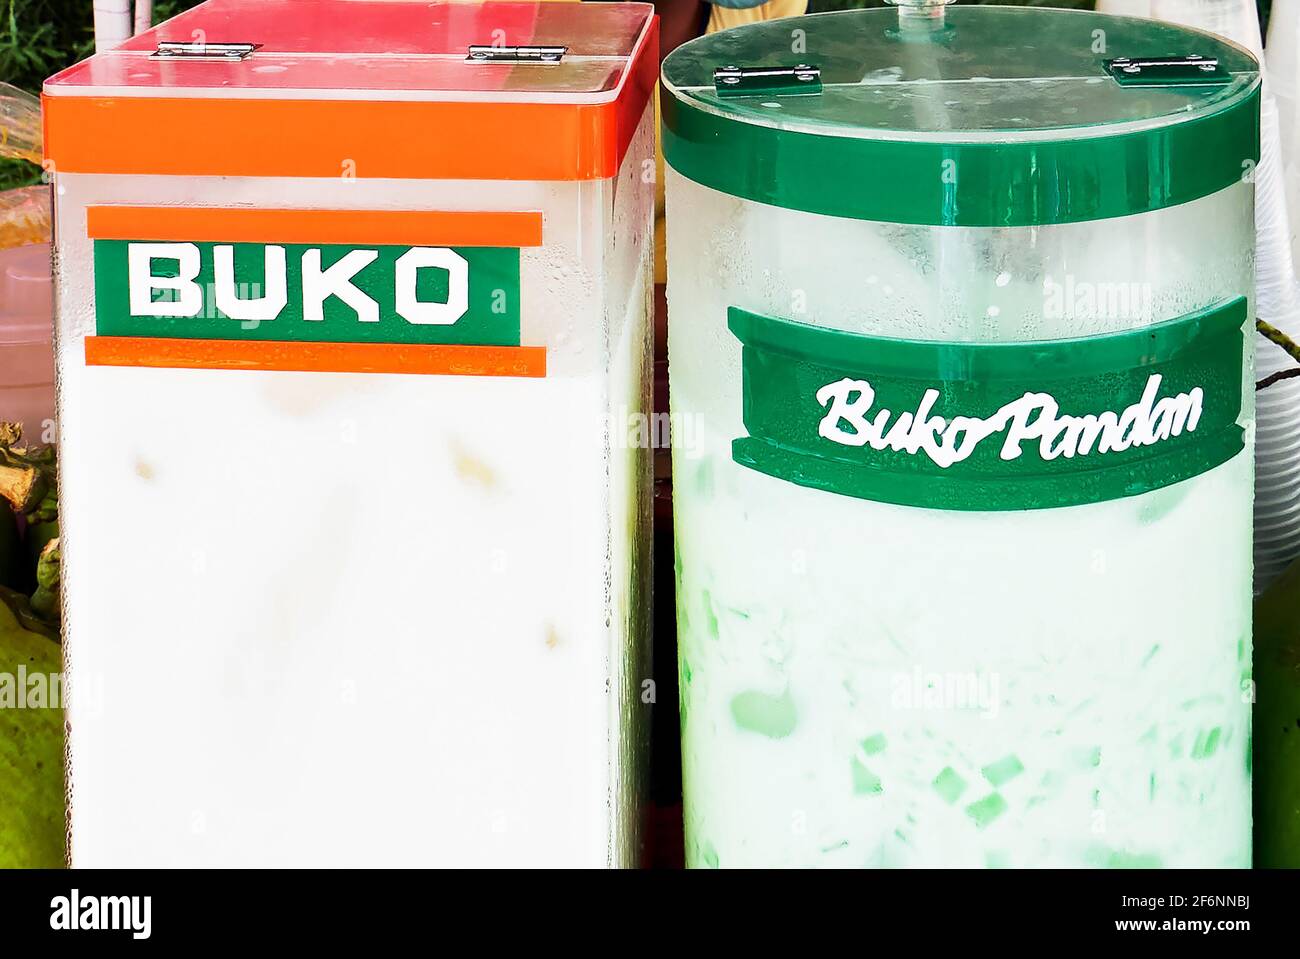 Nahaufnahme von philippinischem Kokosnusssaft, genannt BUKO Juice, gemischt mit Pandan-Geschmack, angeboten von Straßenverkäufern in Acrylglasbehältern Stockfoto